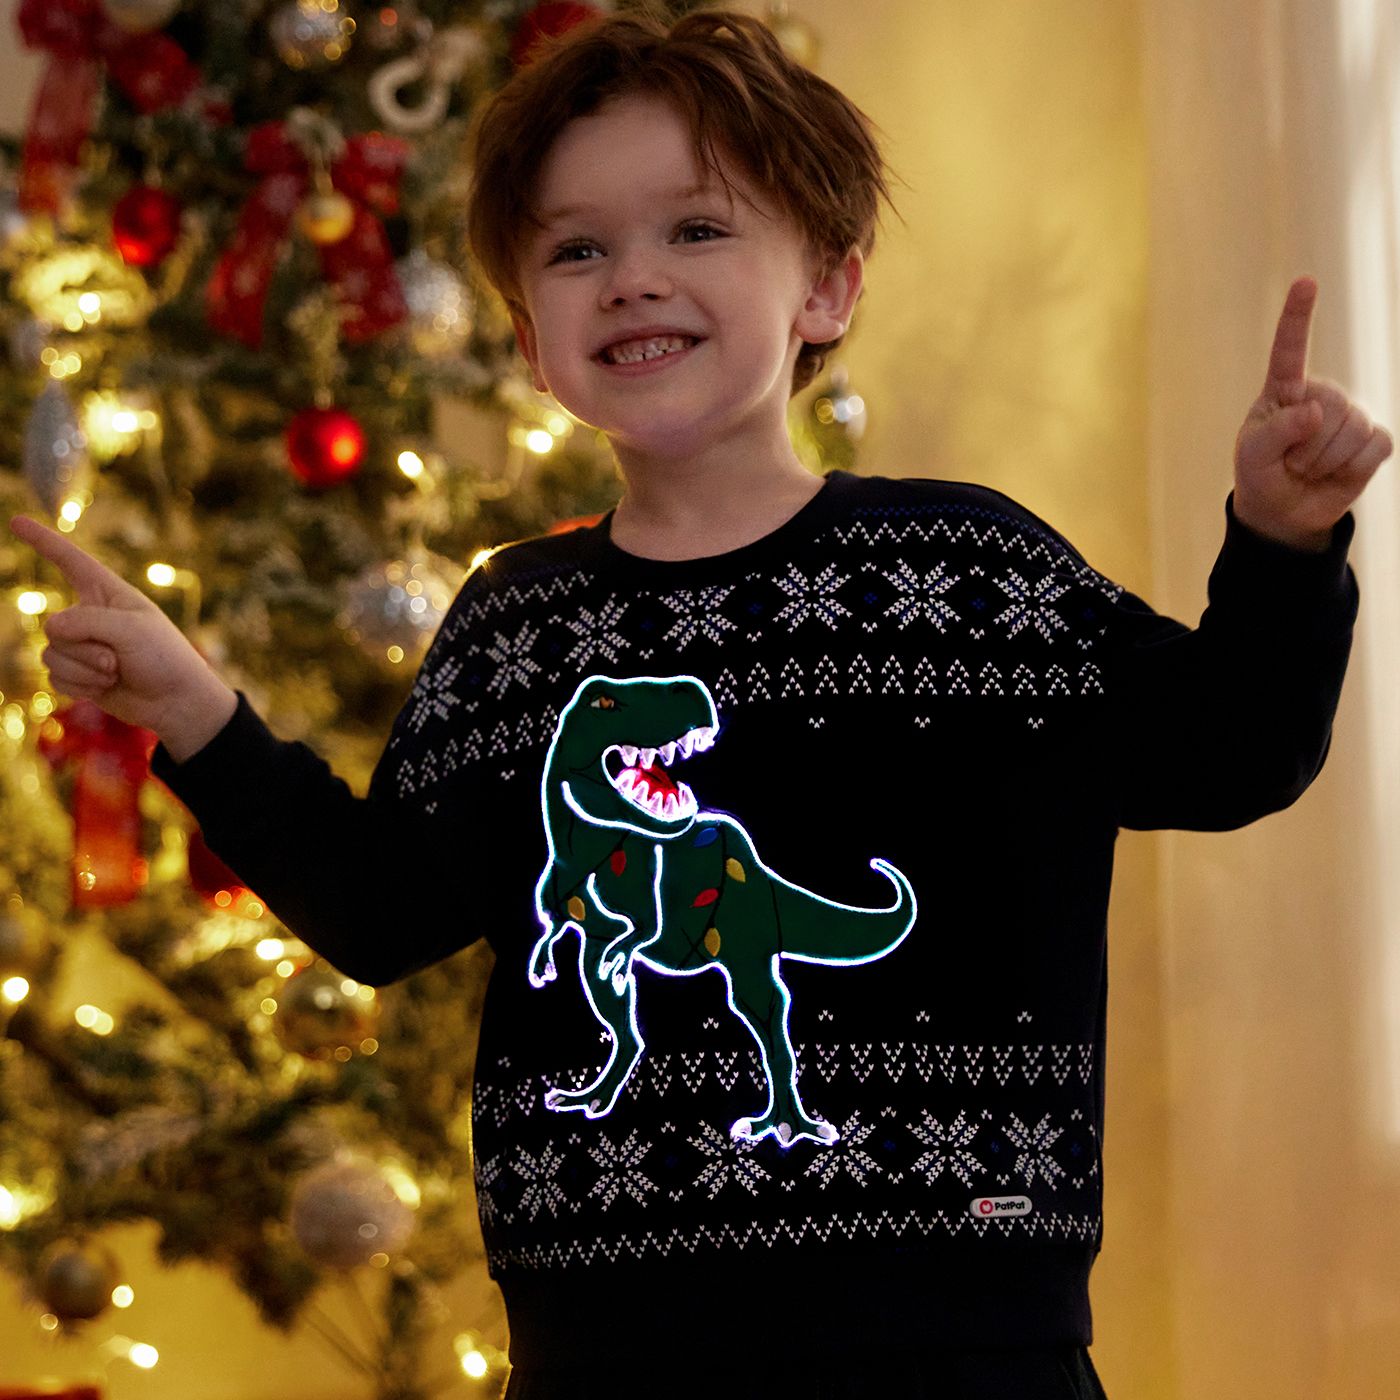 Go-Glow Christmas Illuminating Sweatshirt Avec Light Up Dragon Y Compris Le Contrôleur (batterie Intégrée)